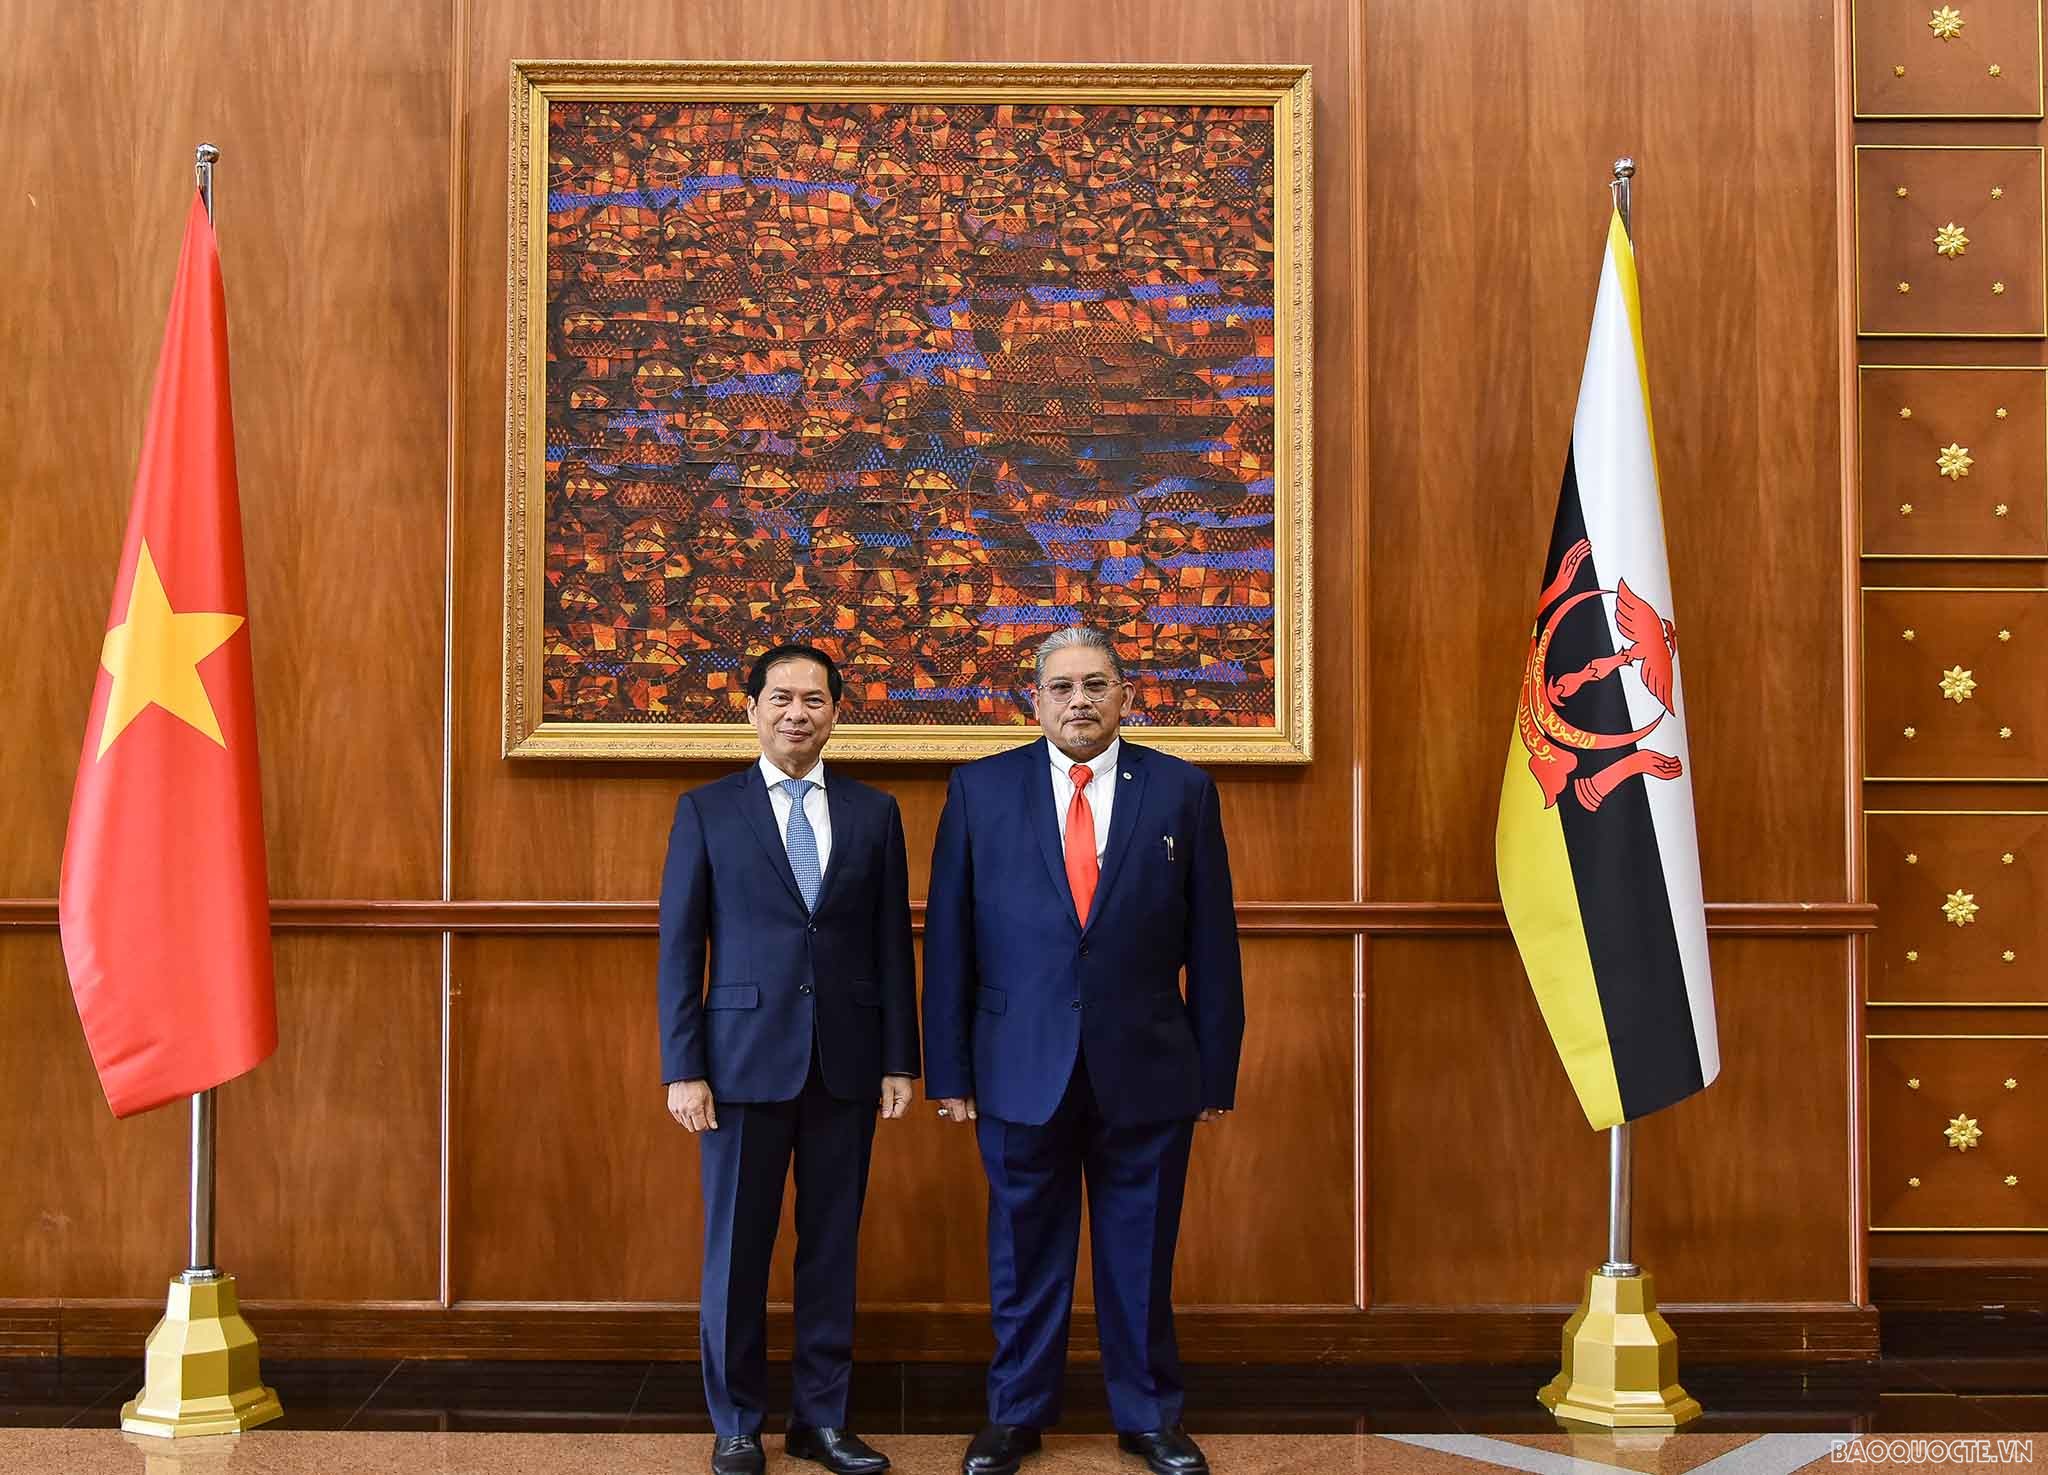 Bộ trưởng Ngoại giao Bùi Thanh Sơn đồng chủ trì Kỳ họp lần 2 Uỷ ban hỗn hợp về Hợp tác song phương Việt Nam-Brunei